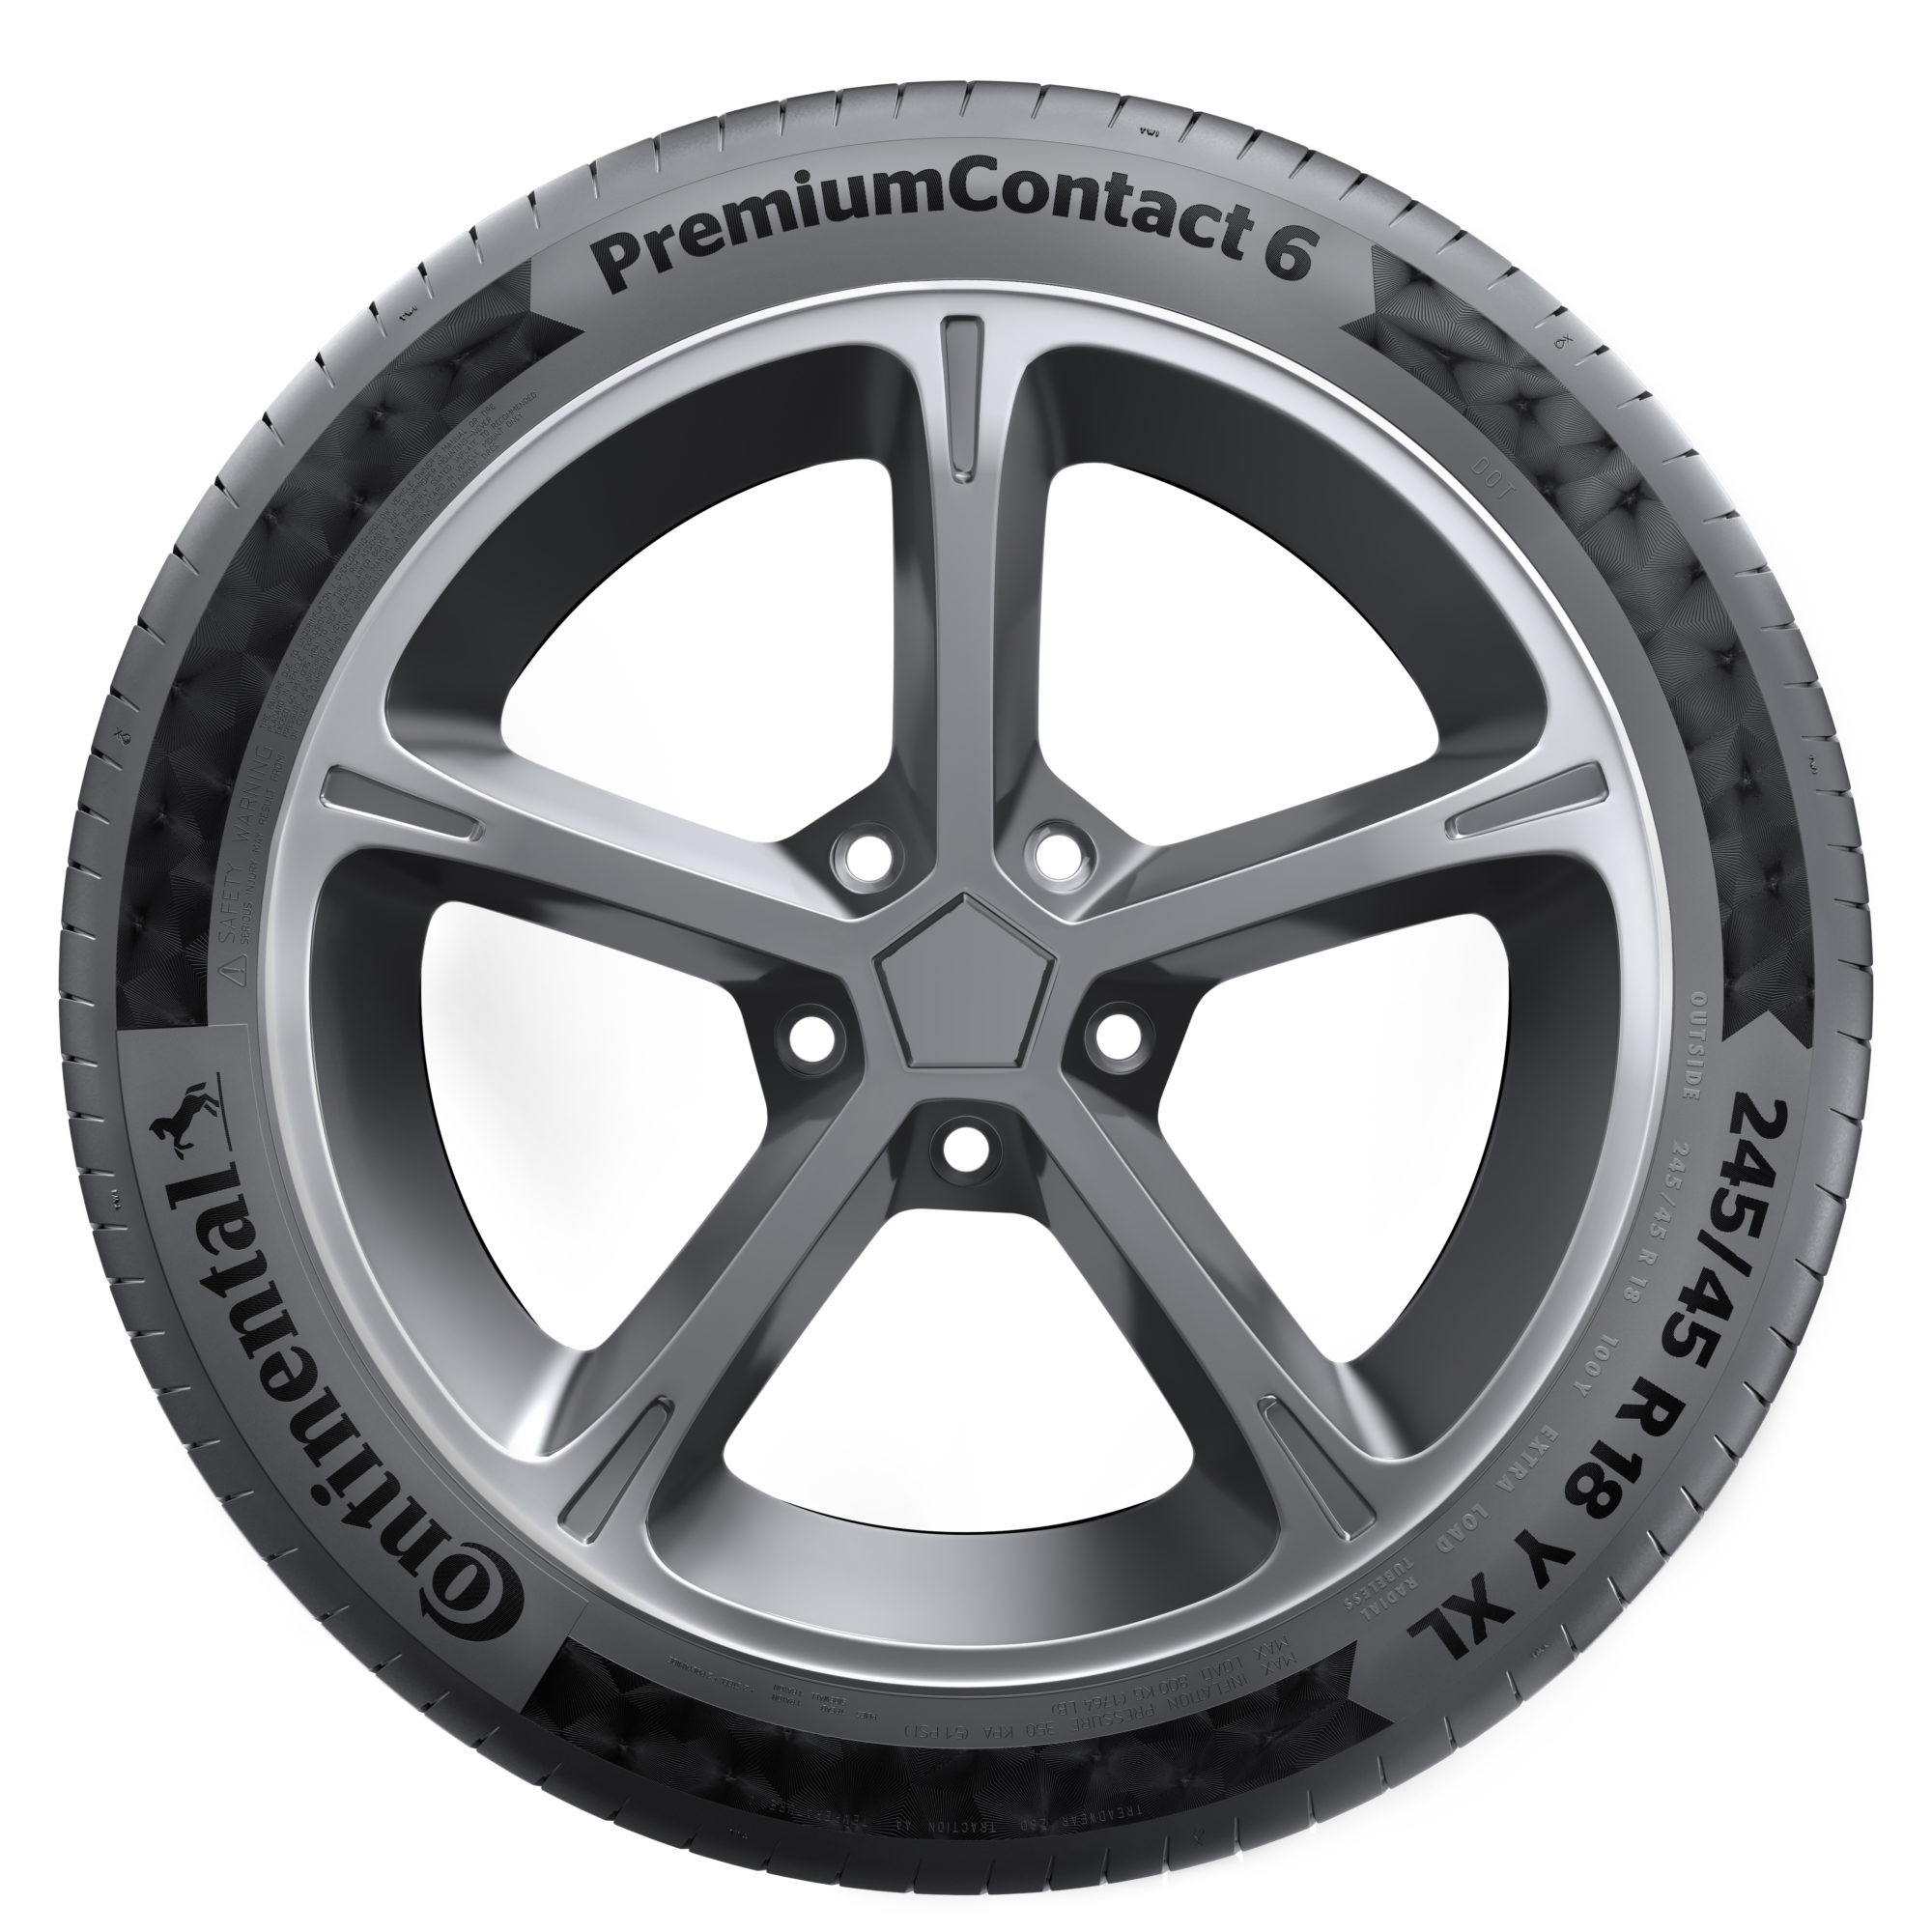 Ab wann Sommerreifen 2019 -Continental PremiumContact 6 Reifen kaufen